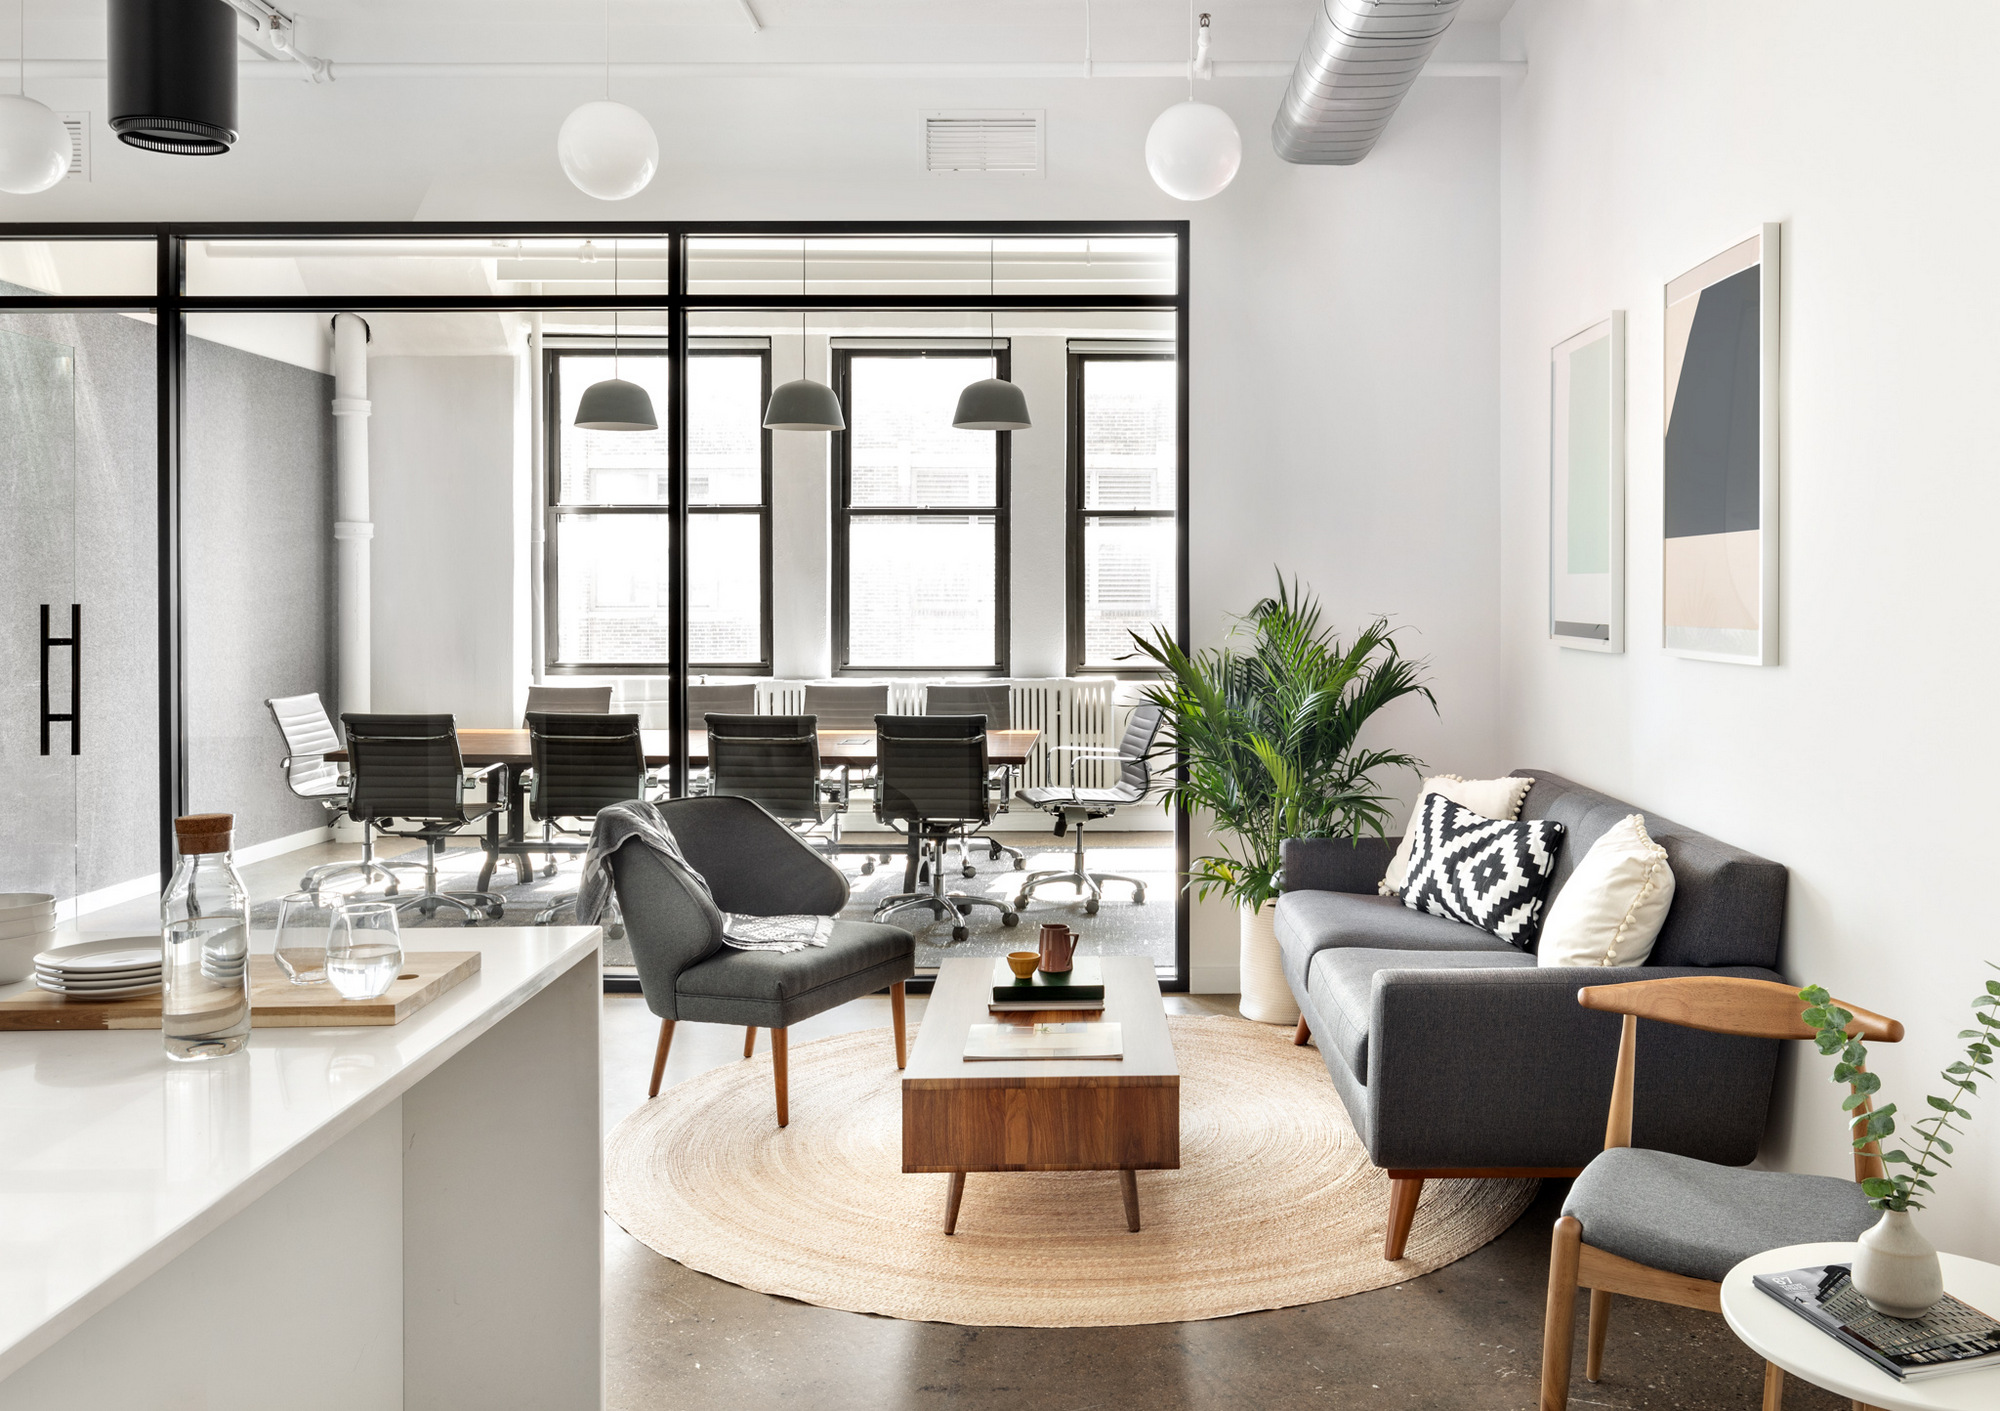 IA房地产集团办公室——纽约市|ART-Arrakis | 建筑室内设计的创新与灵感